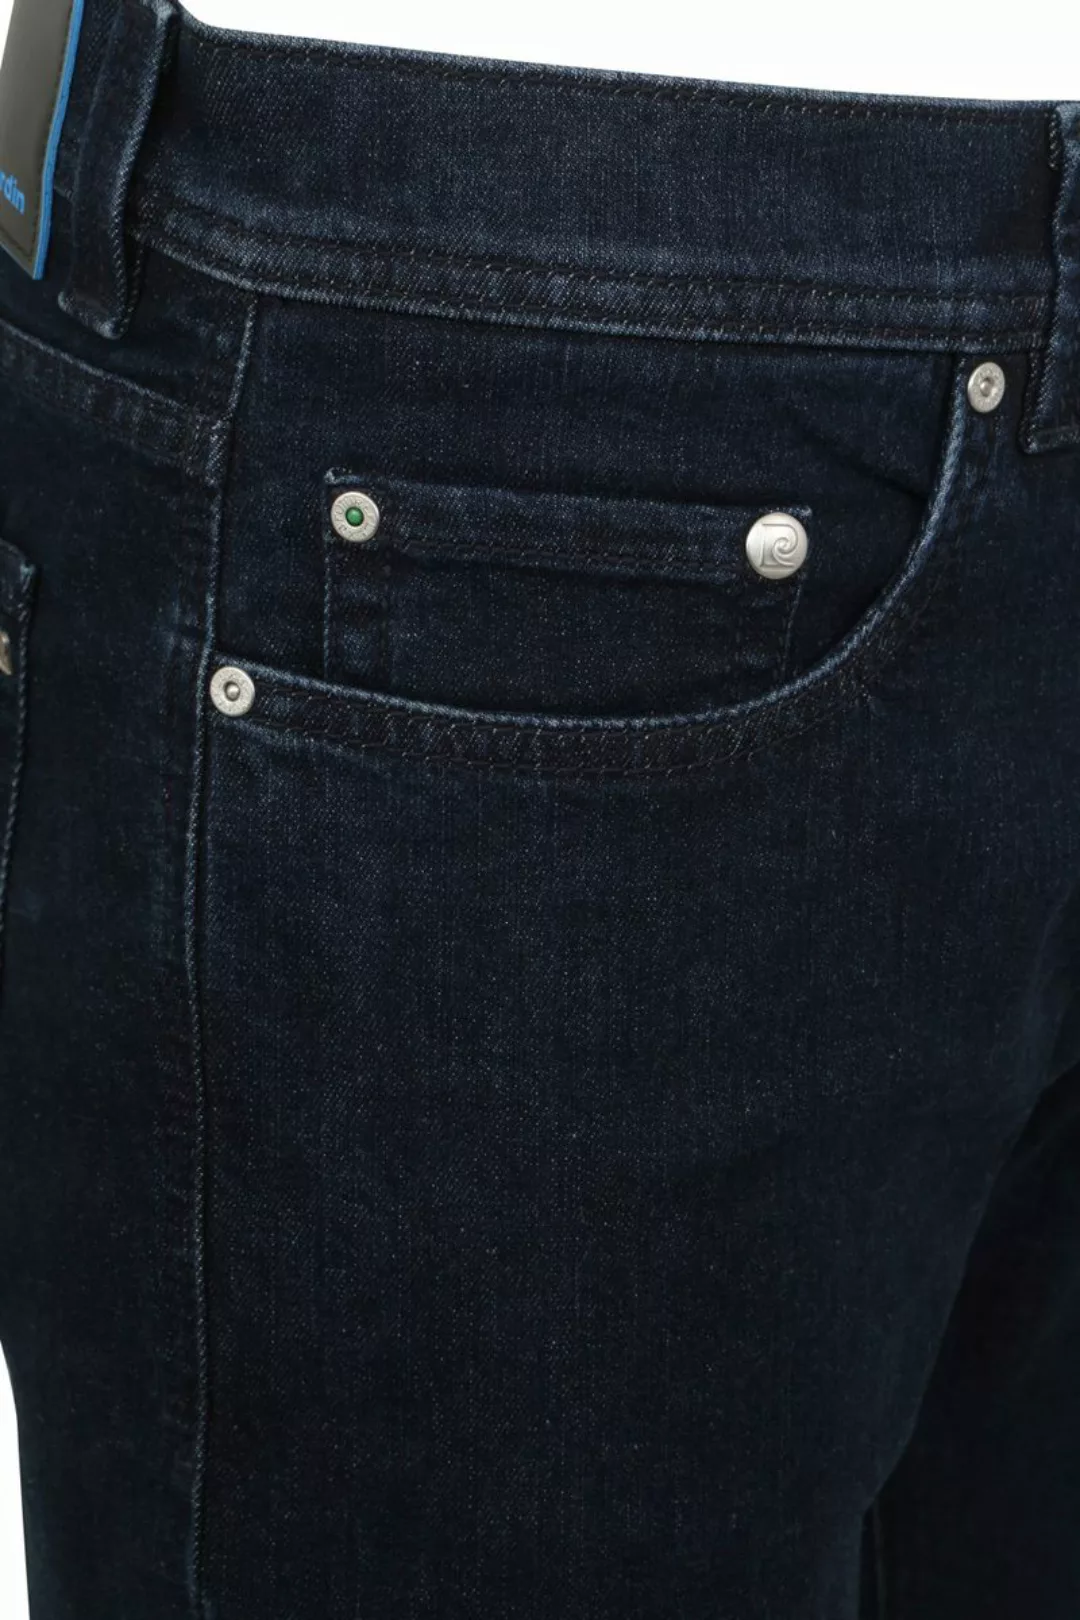 Pierre Cardin Jeans Lyon Tapered Future Flex Dunkel Blau - Größe W 32 - L 3 günstig online kaufen